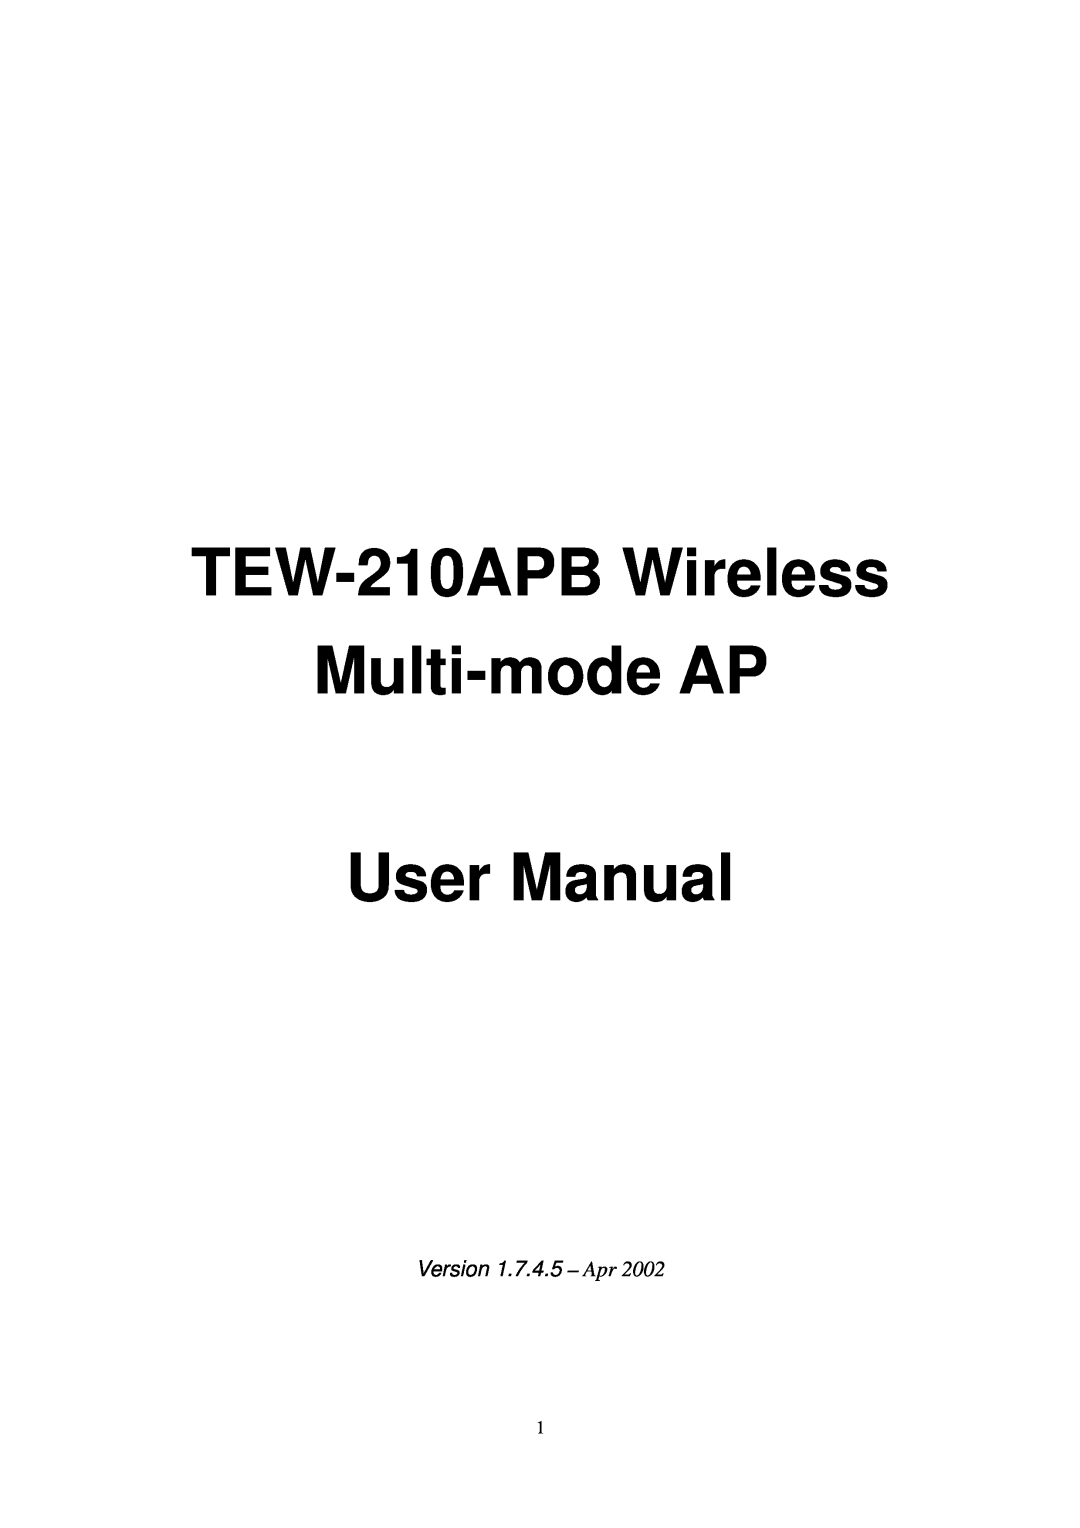 TRENDnet TEW-210APB user manual Version 1.7.4.5 - Apr 